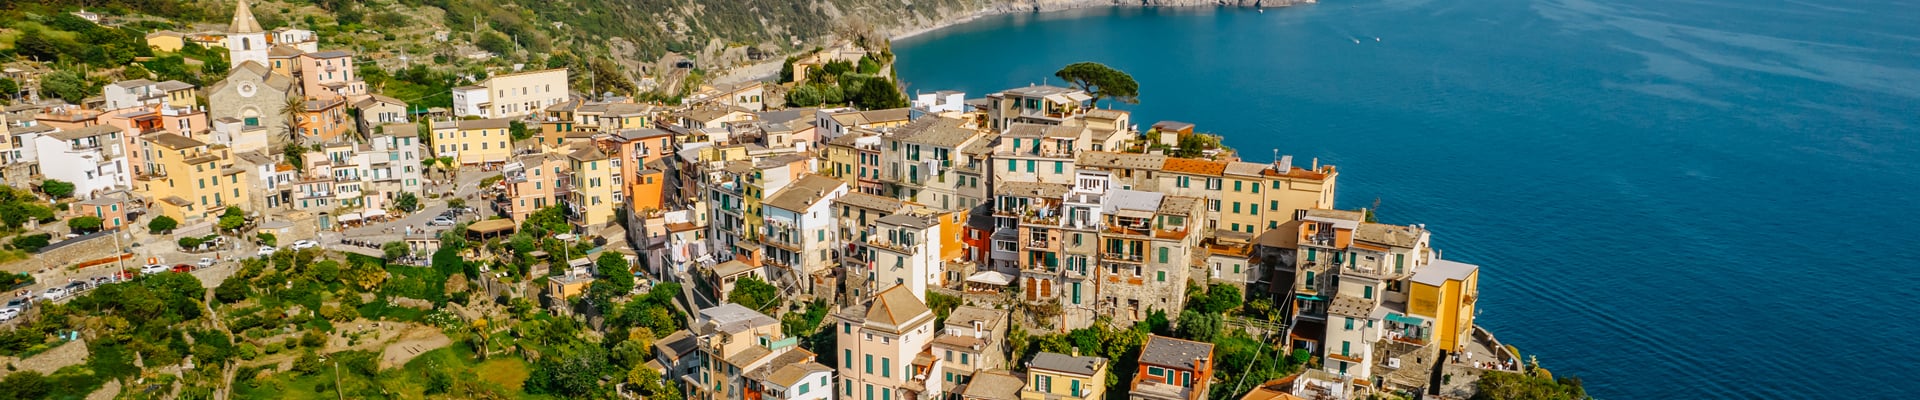 Corniglia, one of the 5 villages in Italy's Cinque Terre